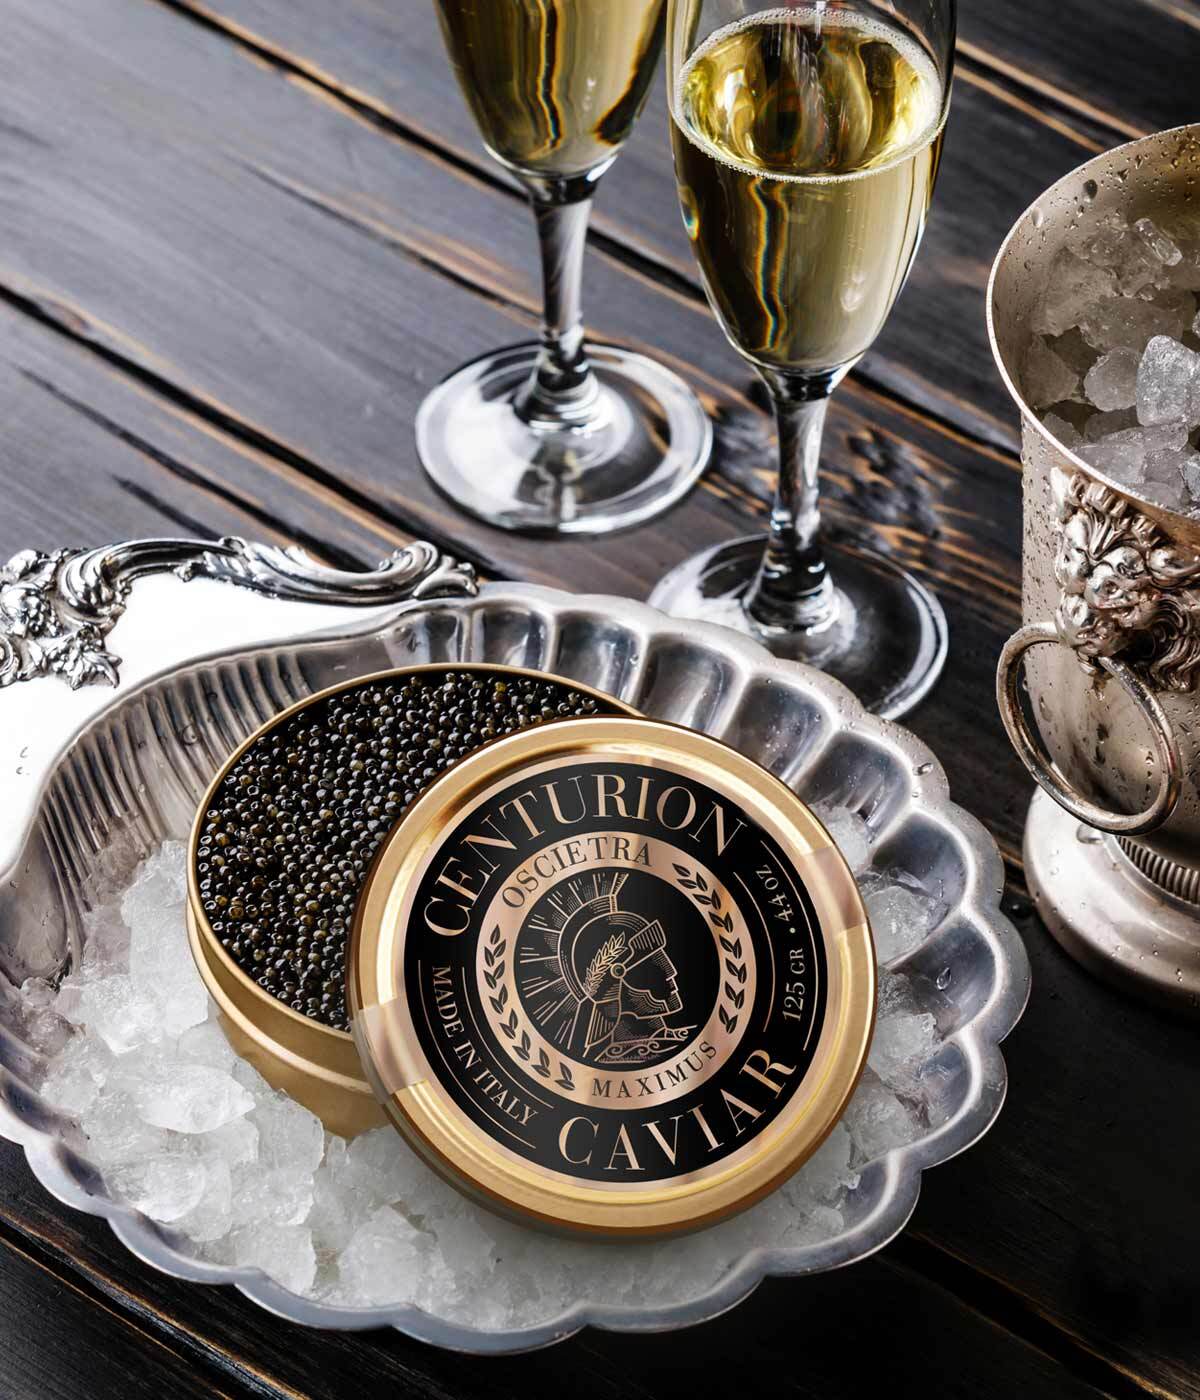 Imaginity, Centurion Caviar, Diseño de Packaging, Diseño de Logo, Marca, Premium, Sabores